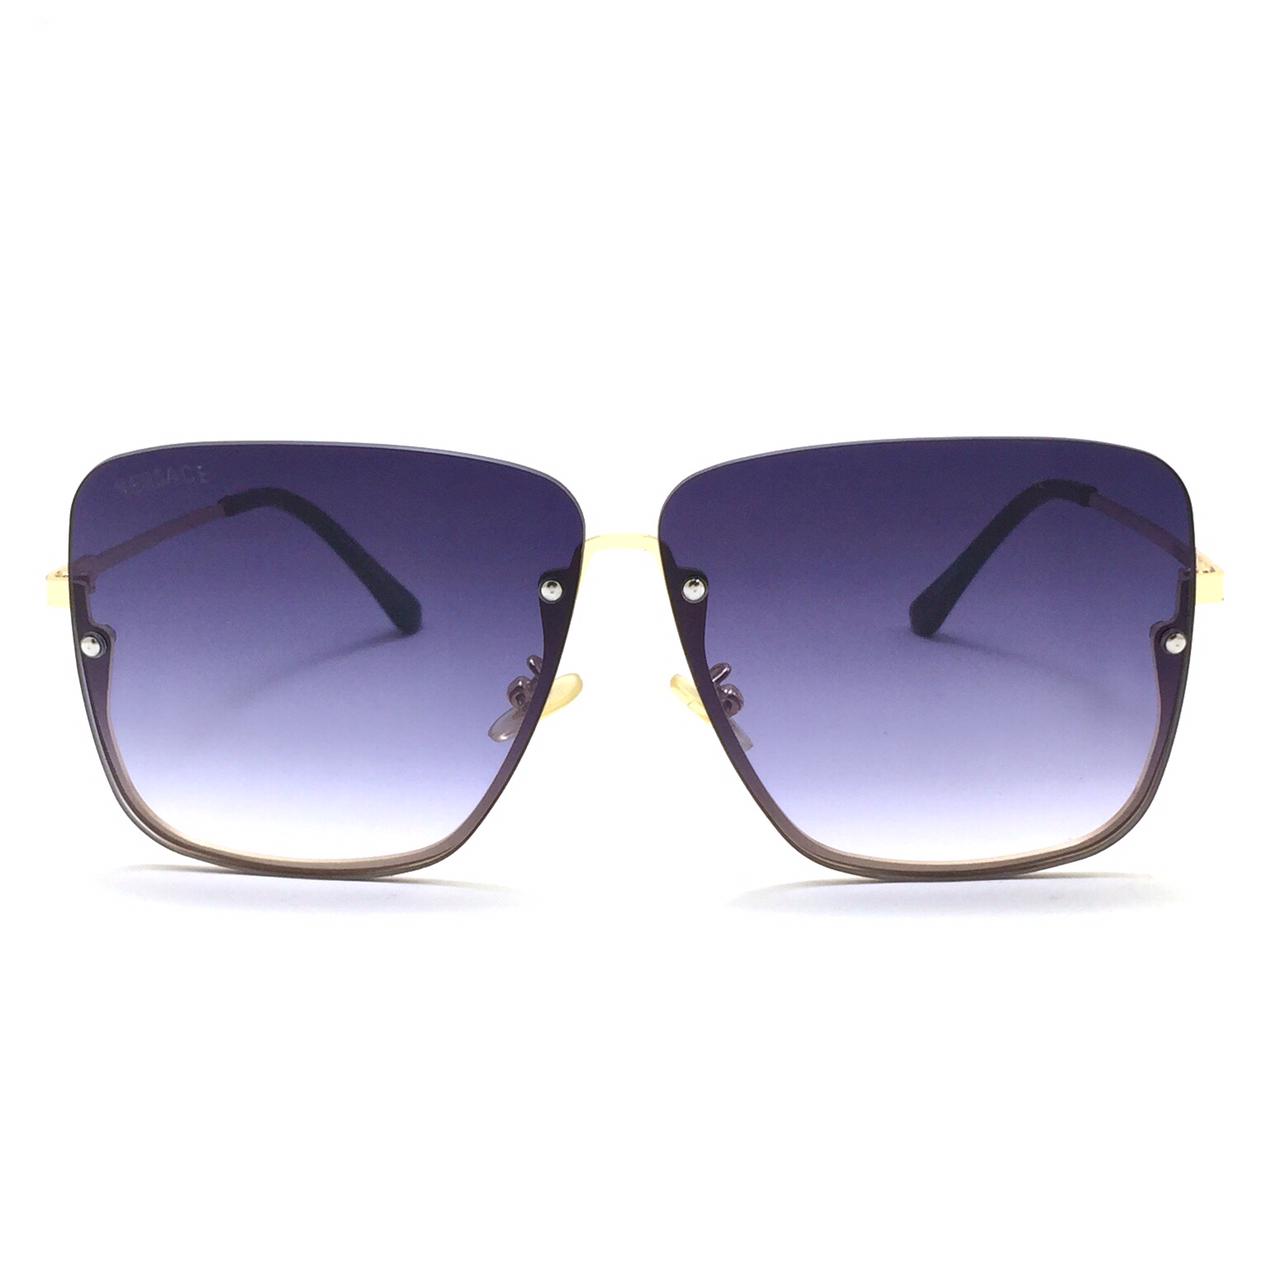 نظارة شمسية مربعة الشكل للنساء من فيرزاتشى VS1095L